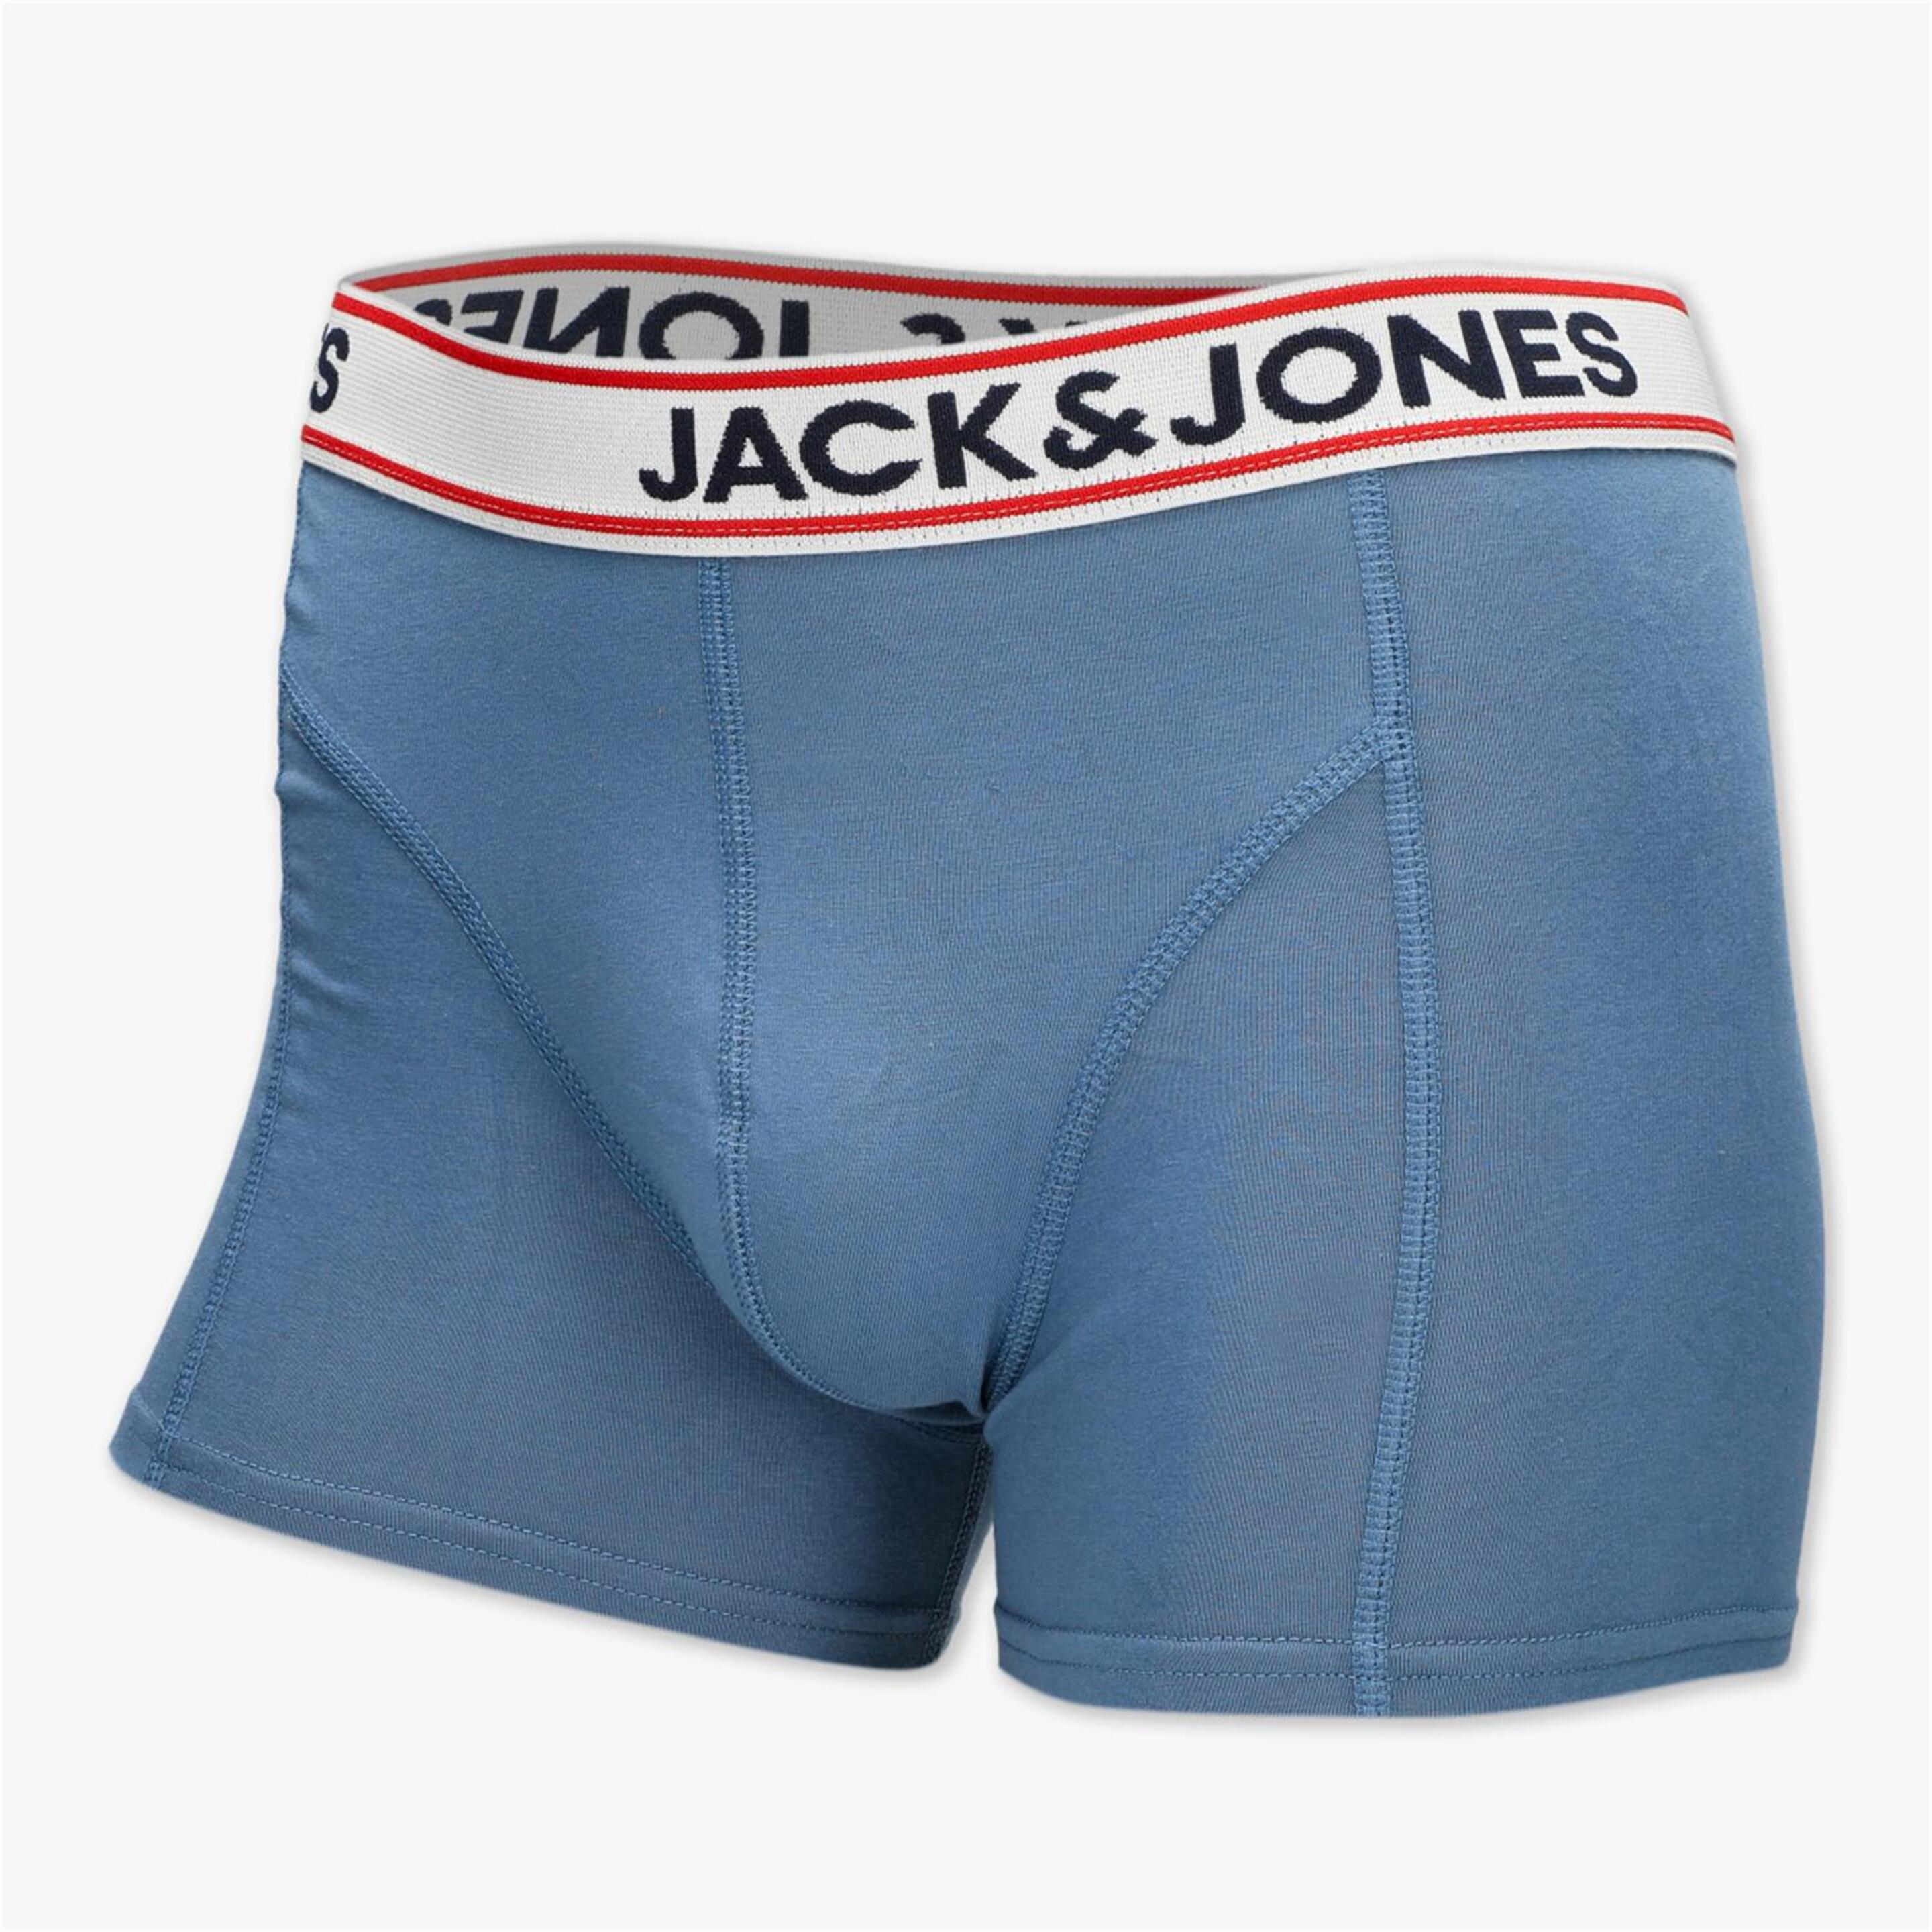 Jack & Jones Jacjake - Azul - Calzoncillos Bóxer